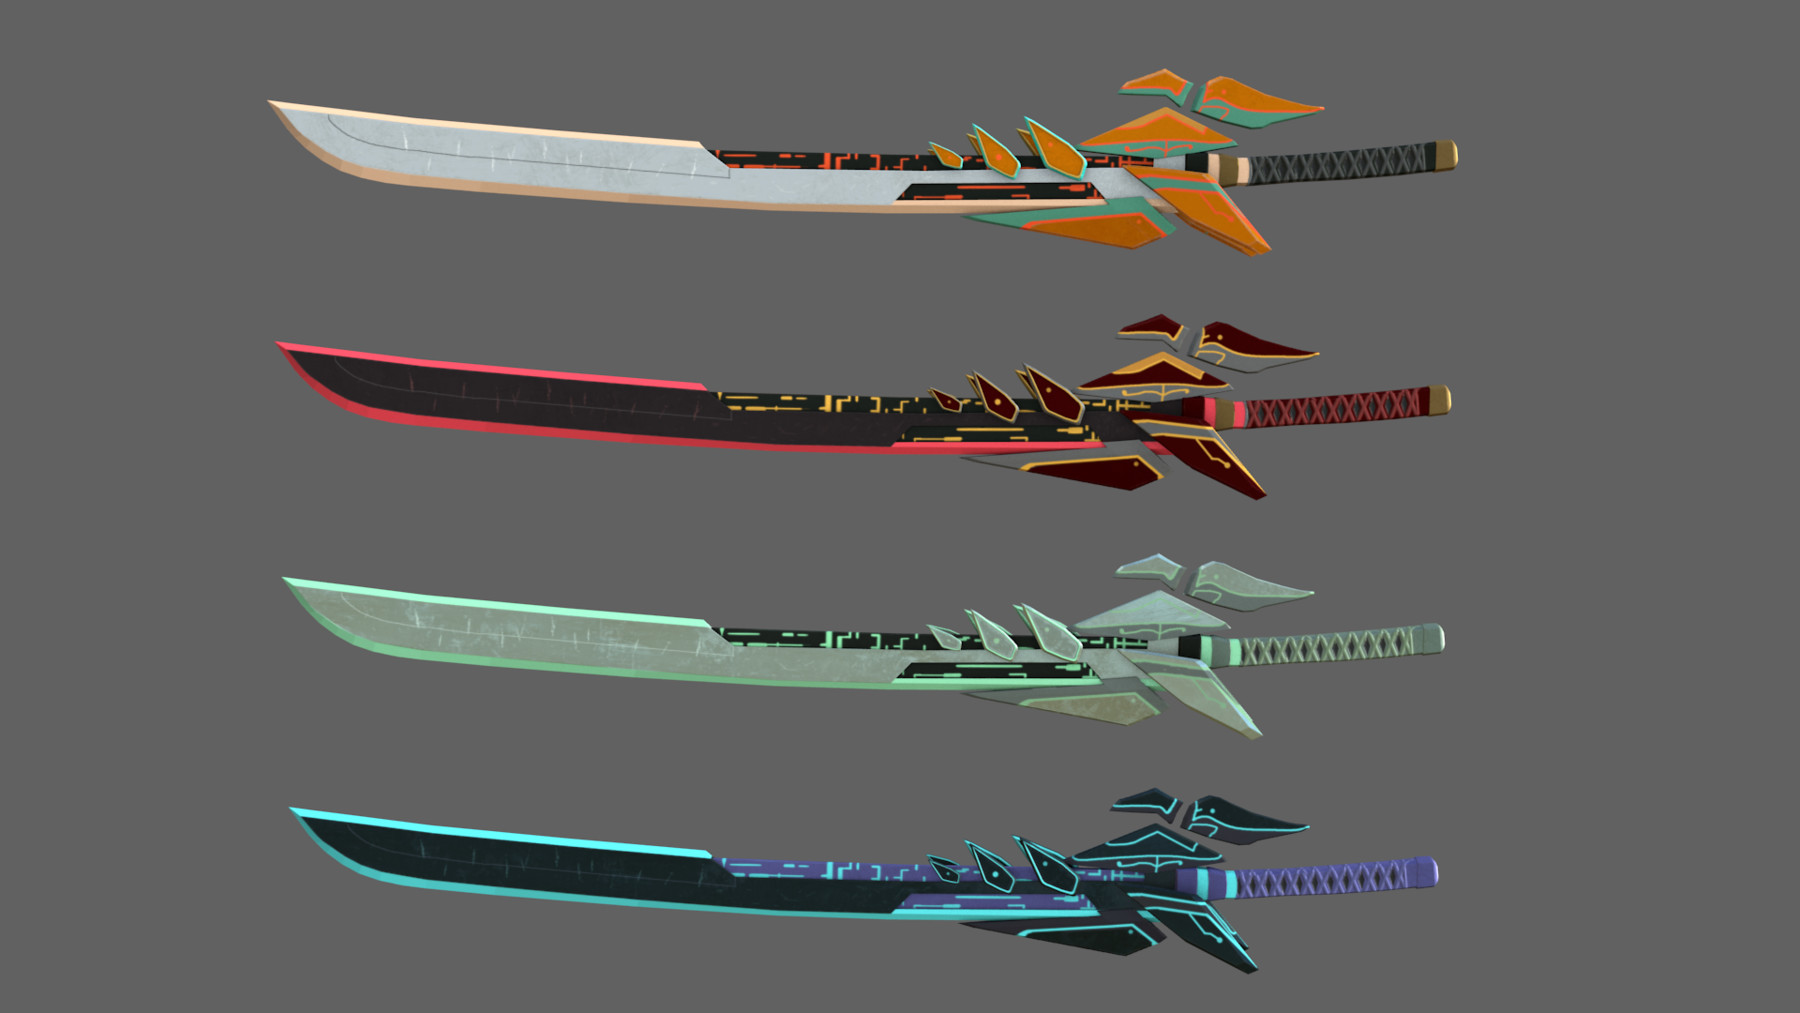 futuristic sword designs